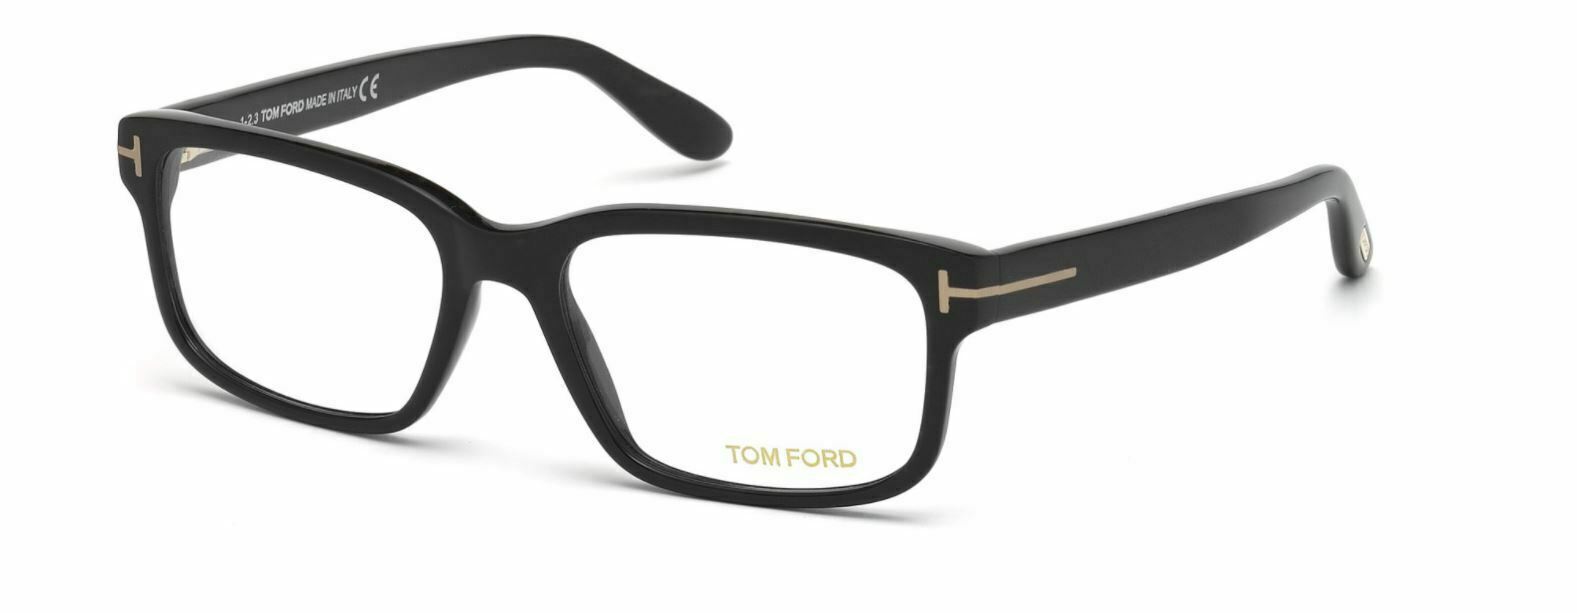 Tom Ford FT5313 002 Matte Black Eyeglasses